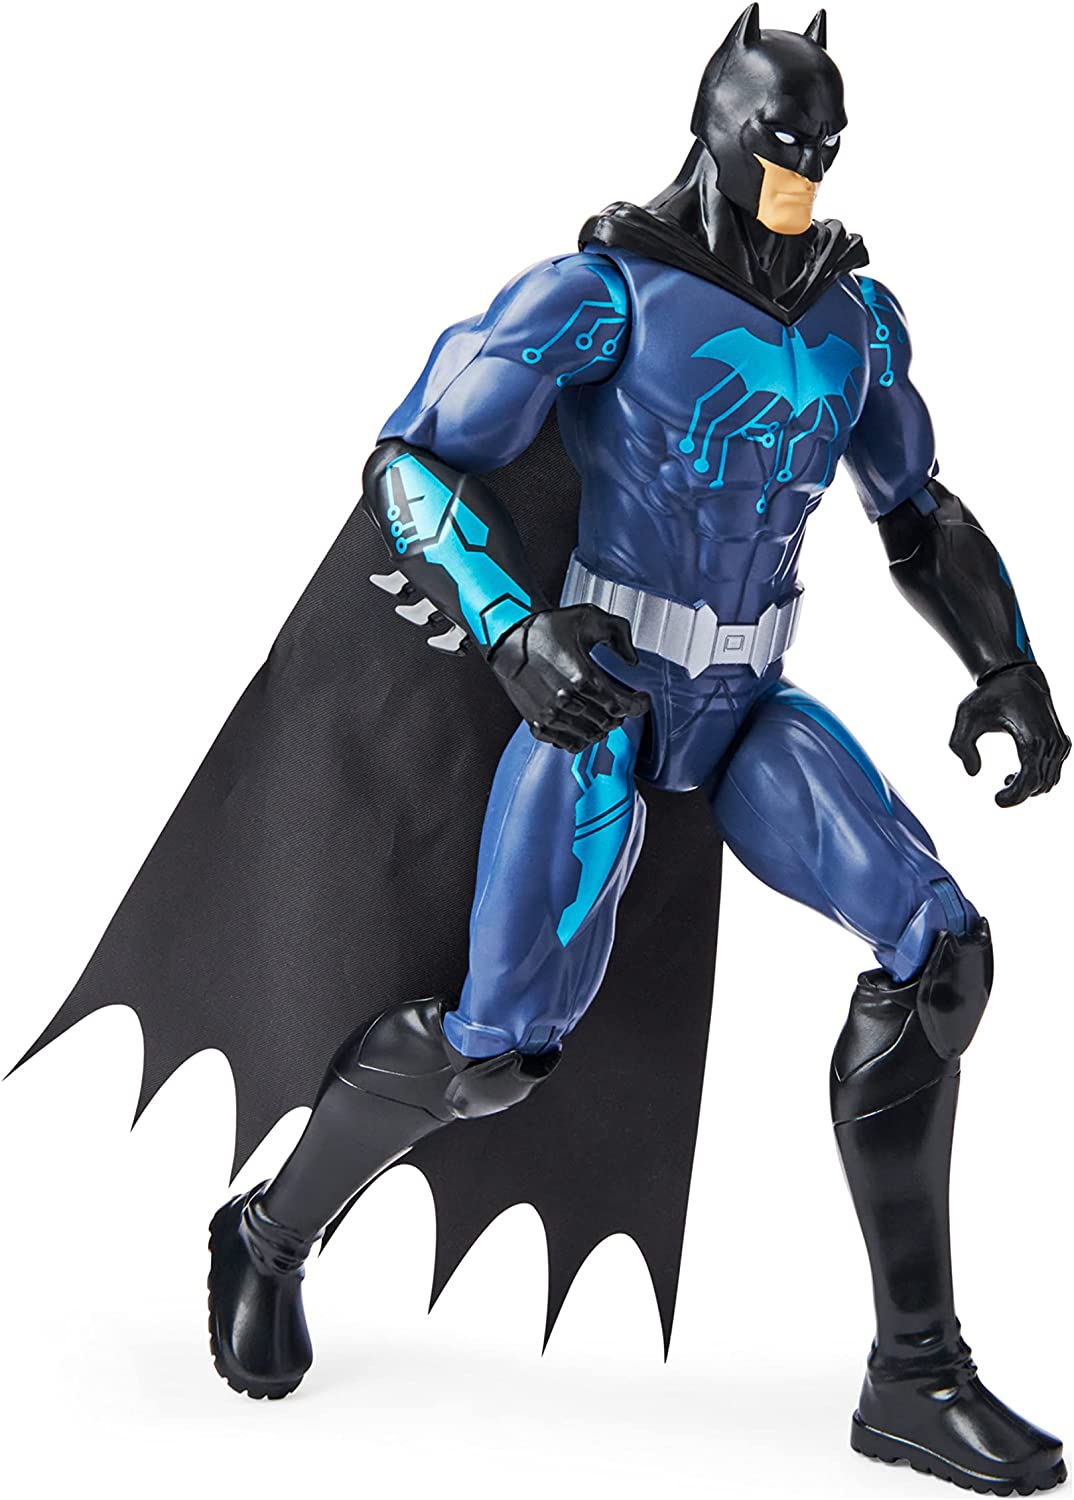 Boneco de ação Batman 30cm Bat-Tech Tactical Blue Suit